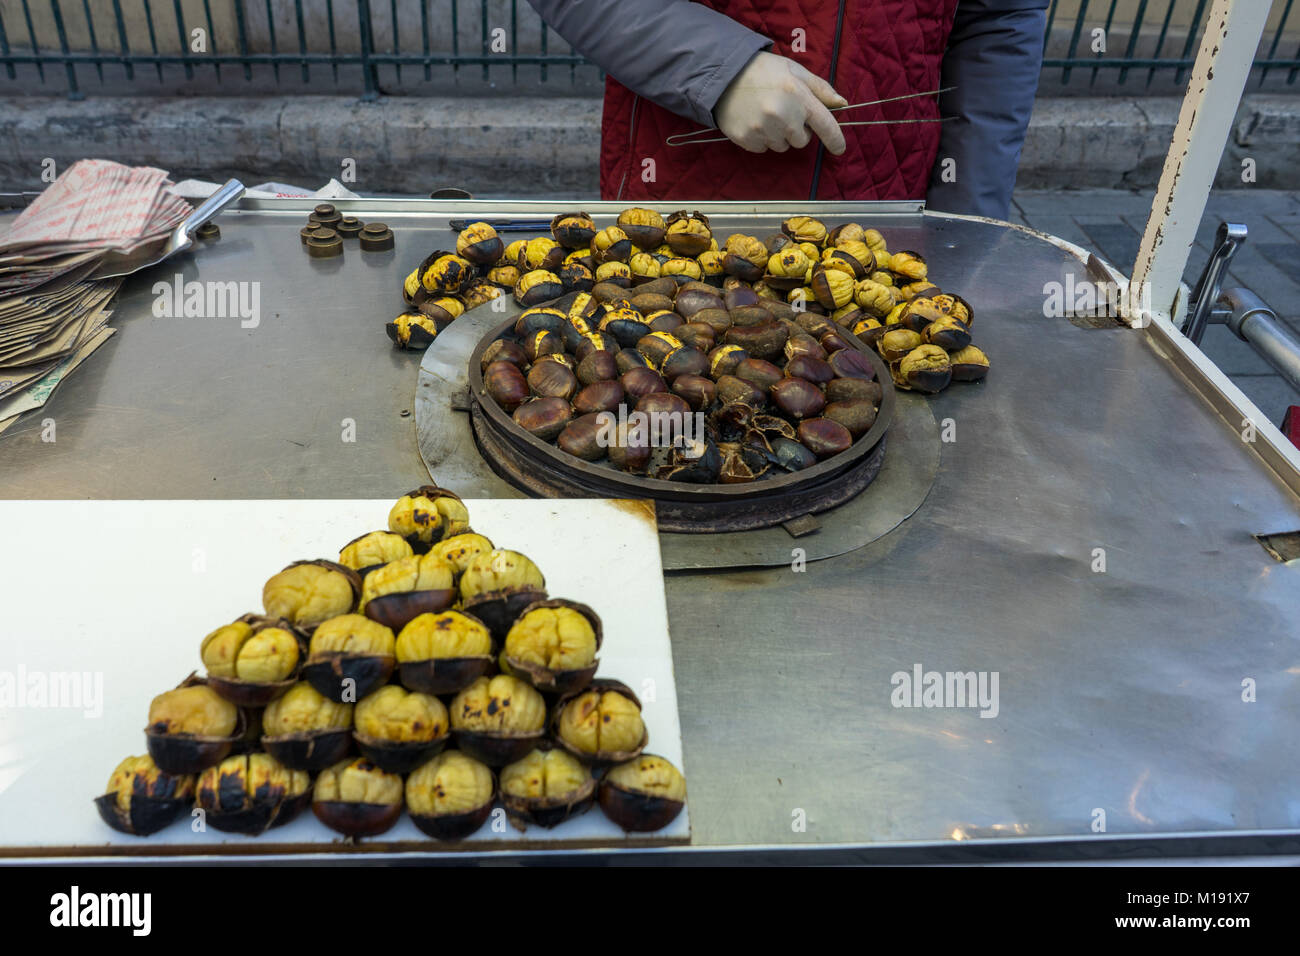 Les mains de l'homme la préparation de châtaignes grillées à la place Taksim, Istanbul, Turquie Banque D'Images